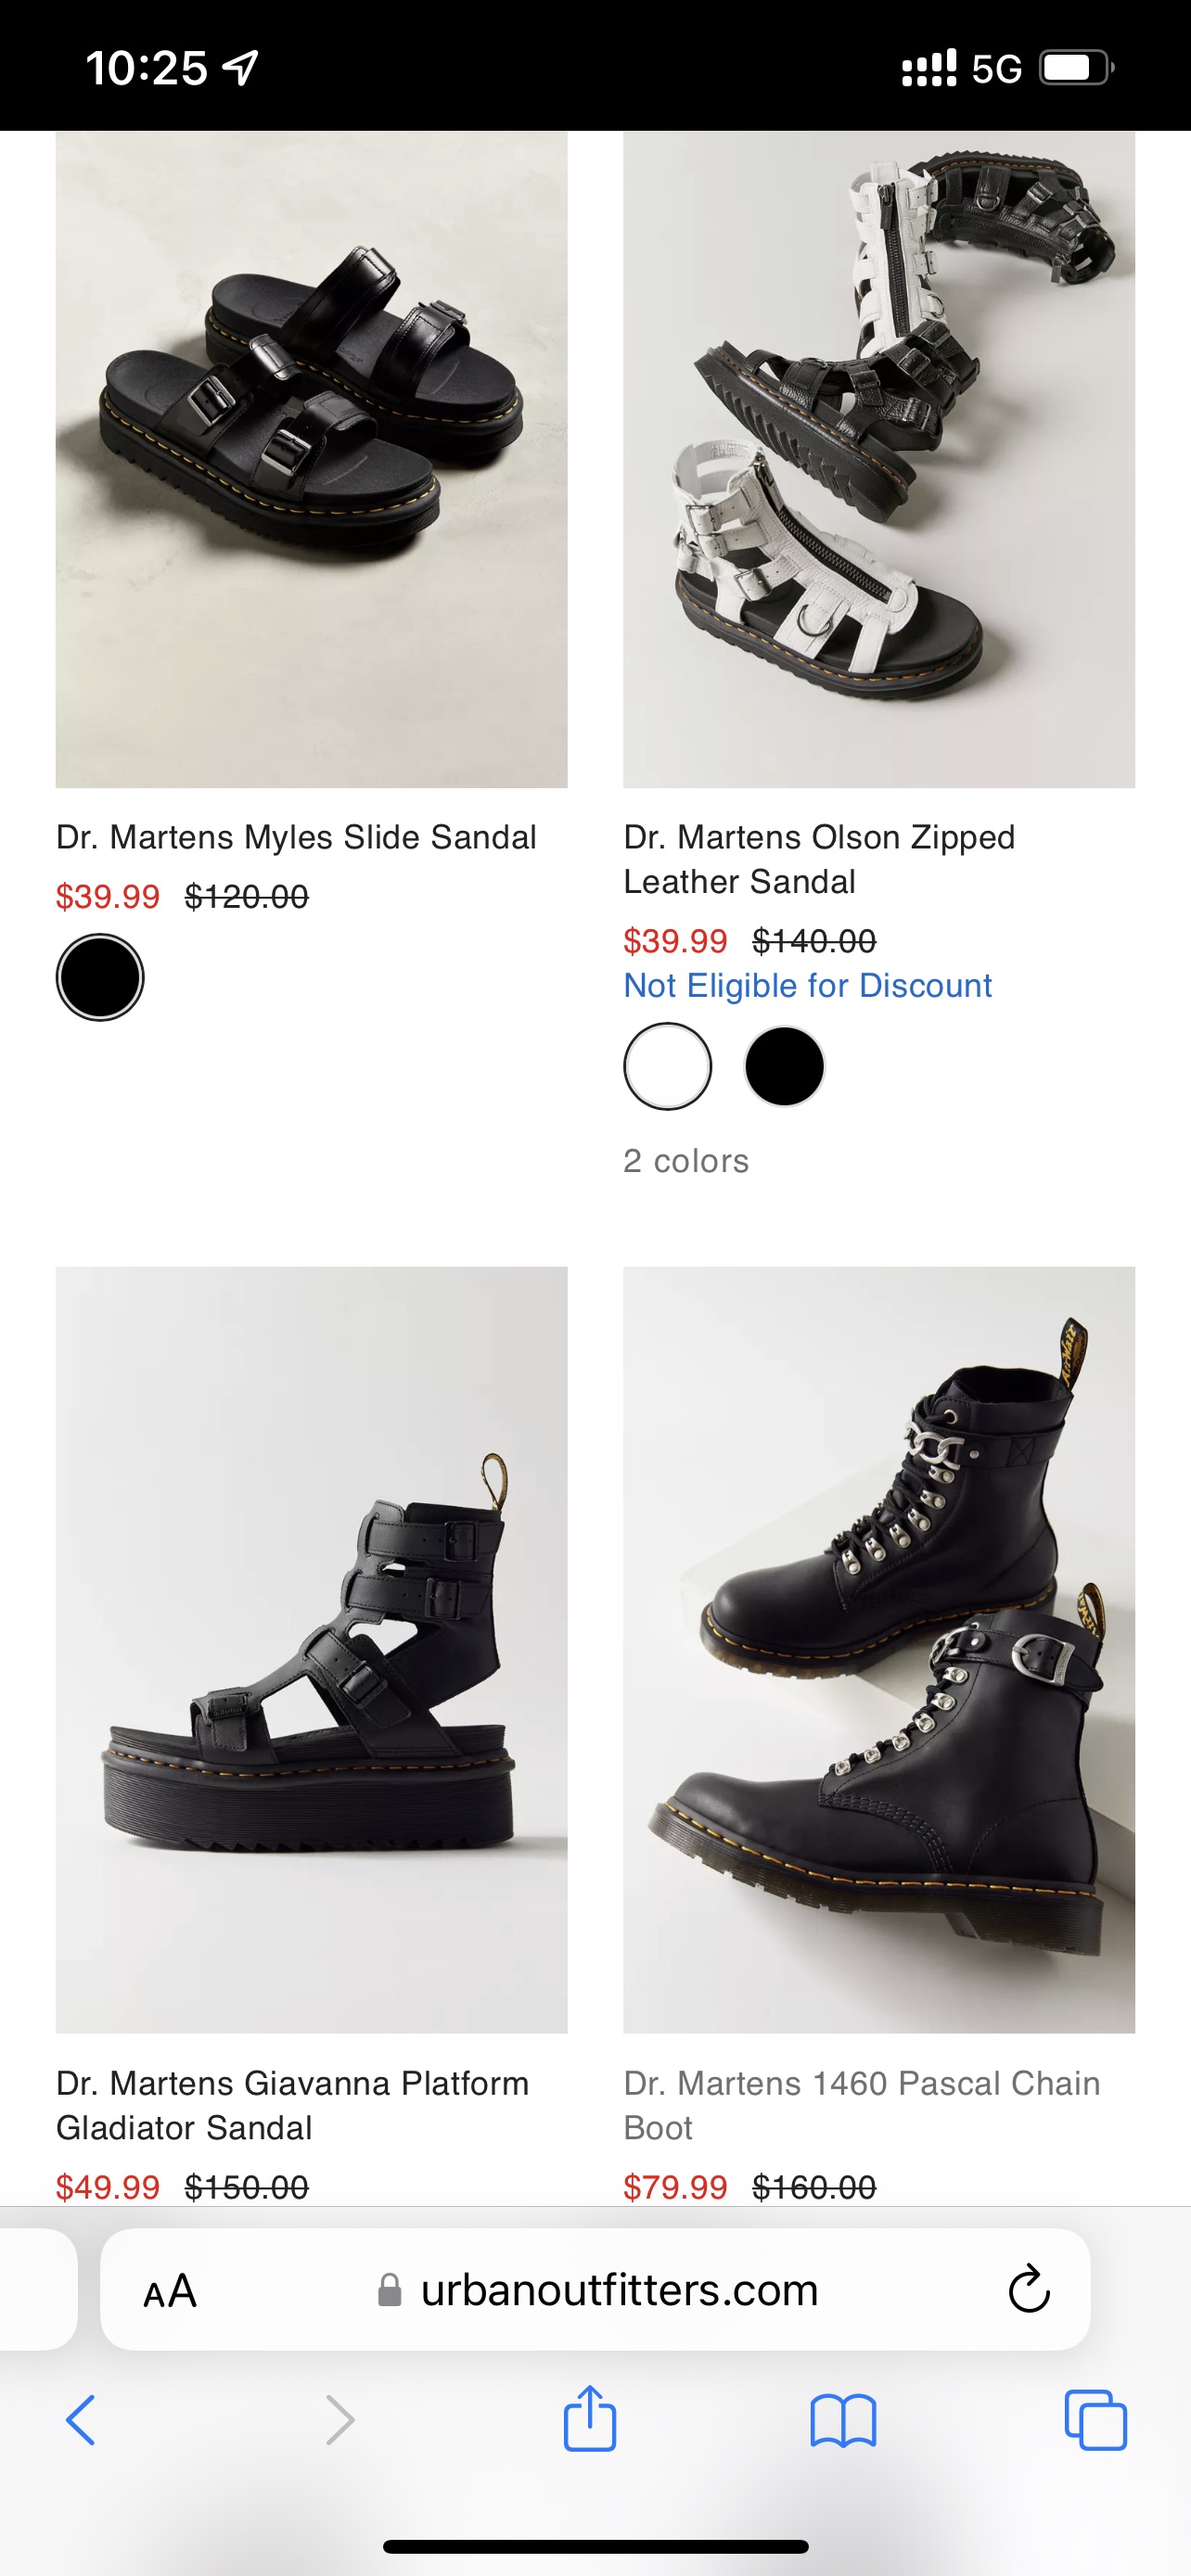 uo dr.martens疑似价格错误，只有四双鞋突然骨折价